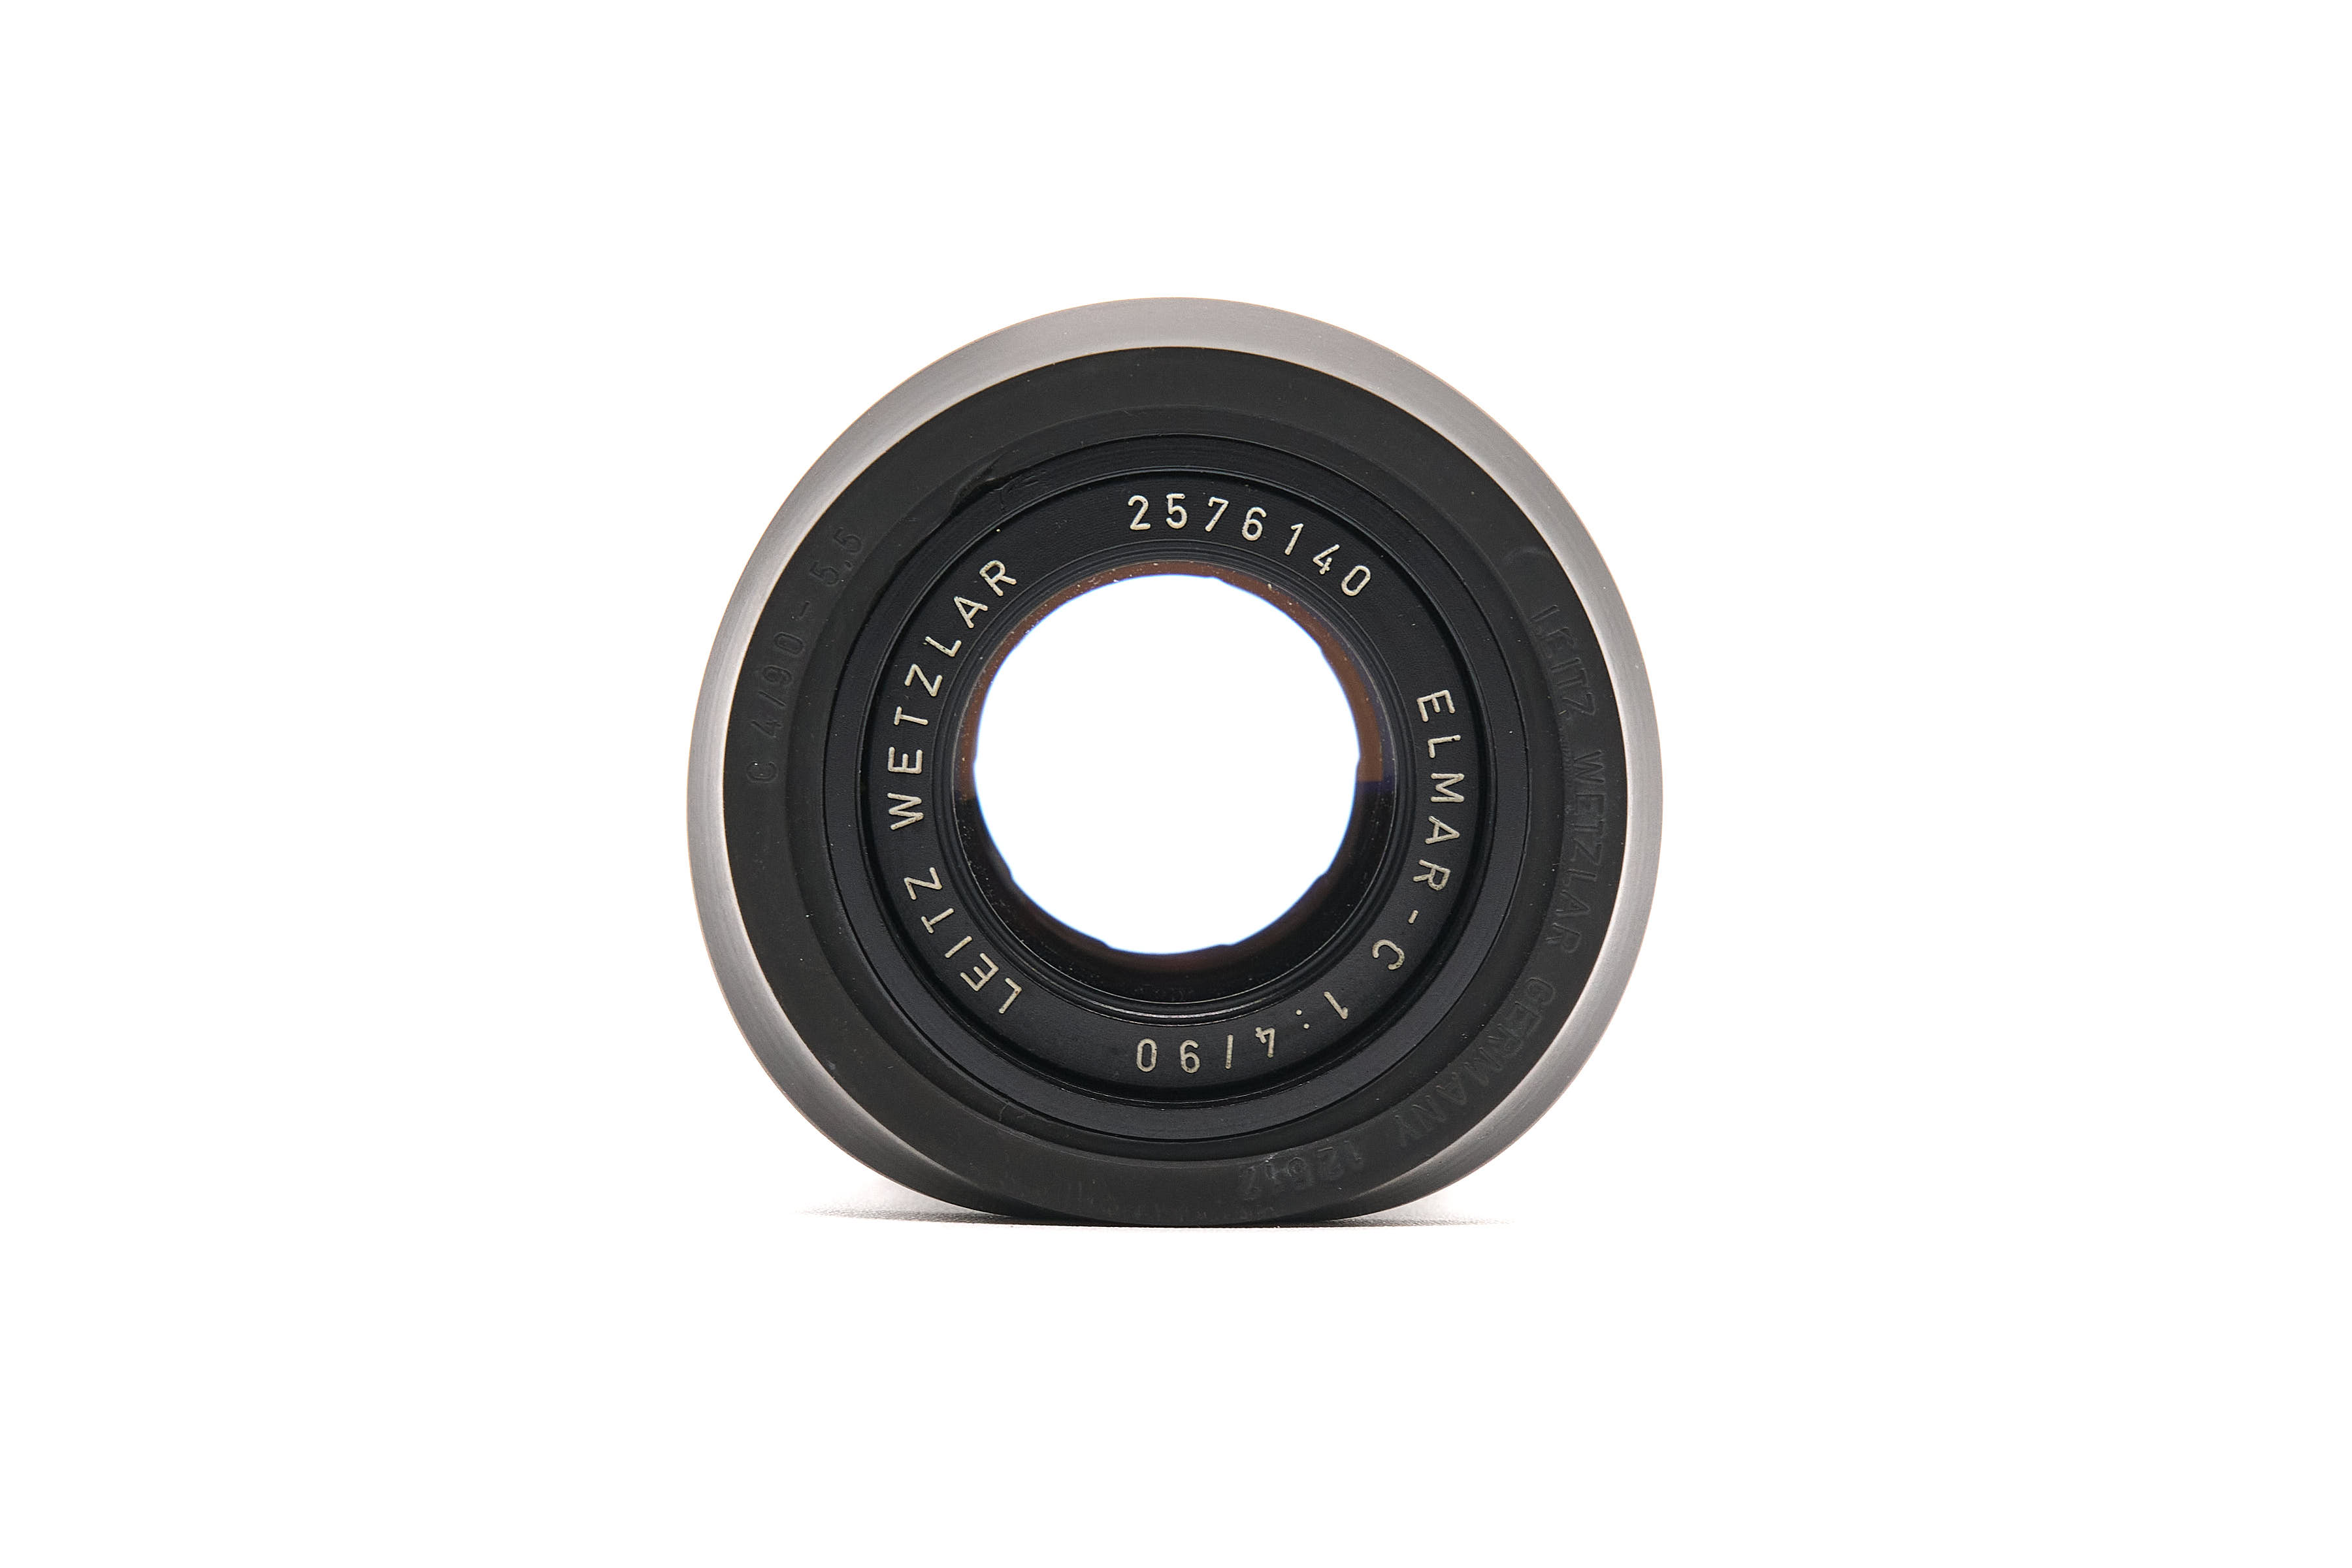 Leica Elmar-C 90mm f/4 11540